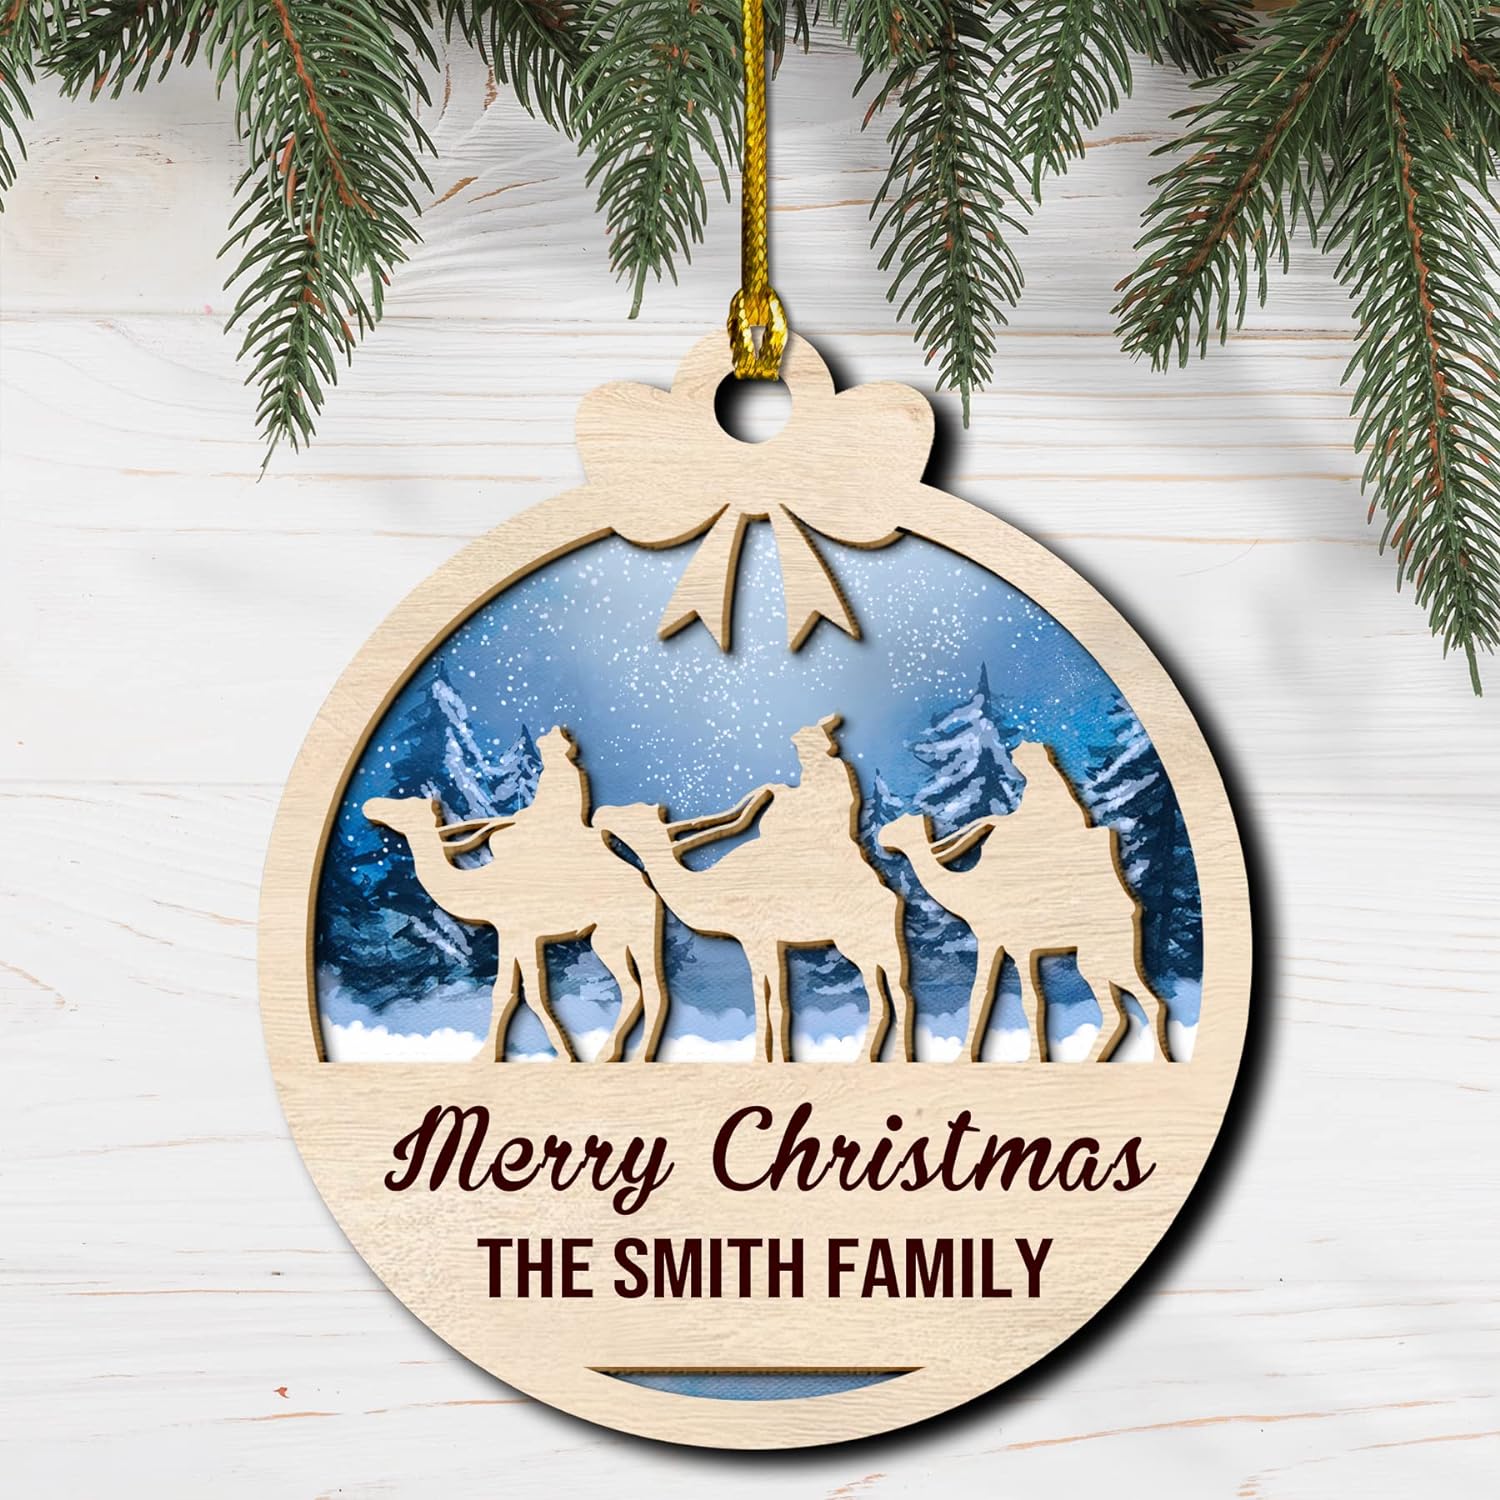 Personalized Nativity Scene Wood Layered Ornaments - Personalized Ornaments for Christmas Tree Decorations